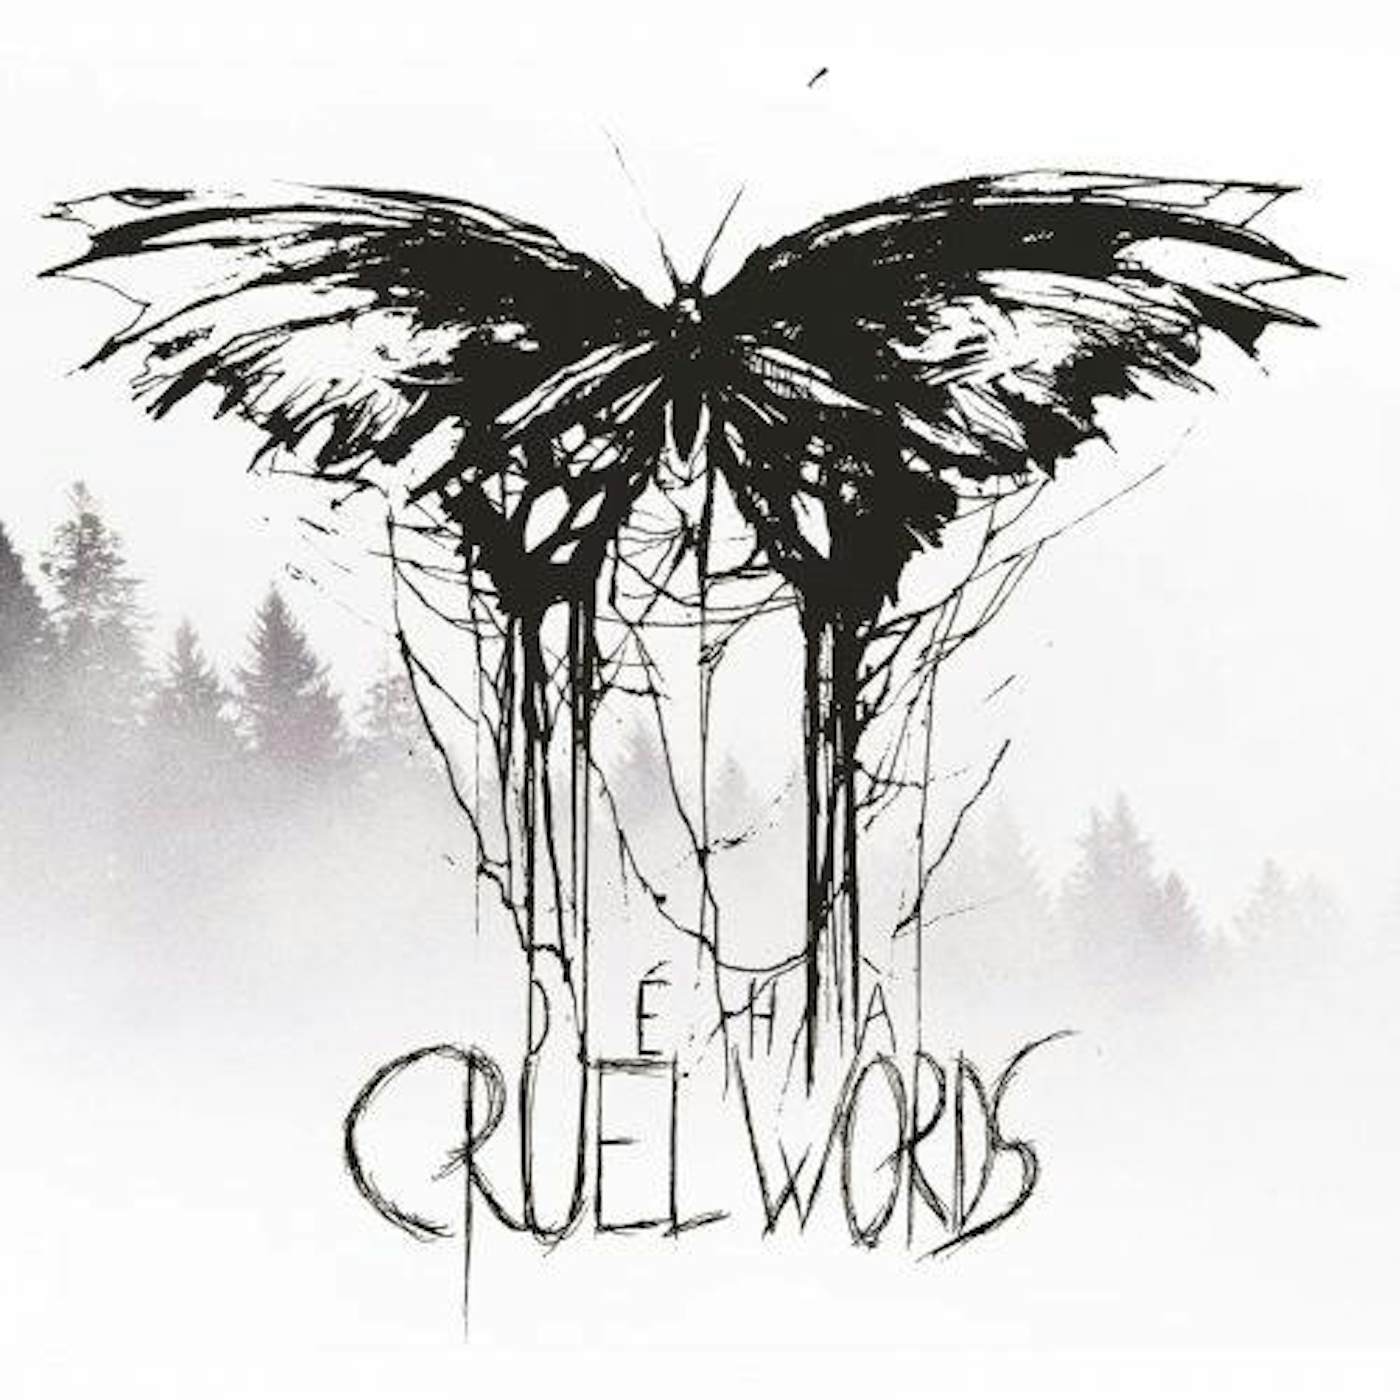 Déhà Cruel Words Vinyl Record